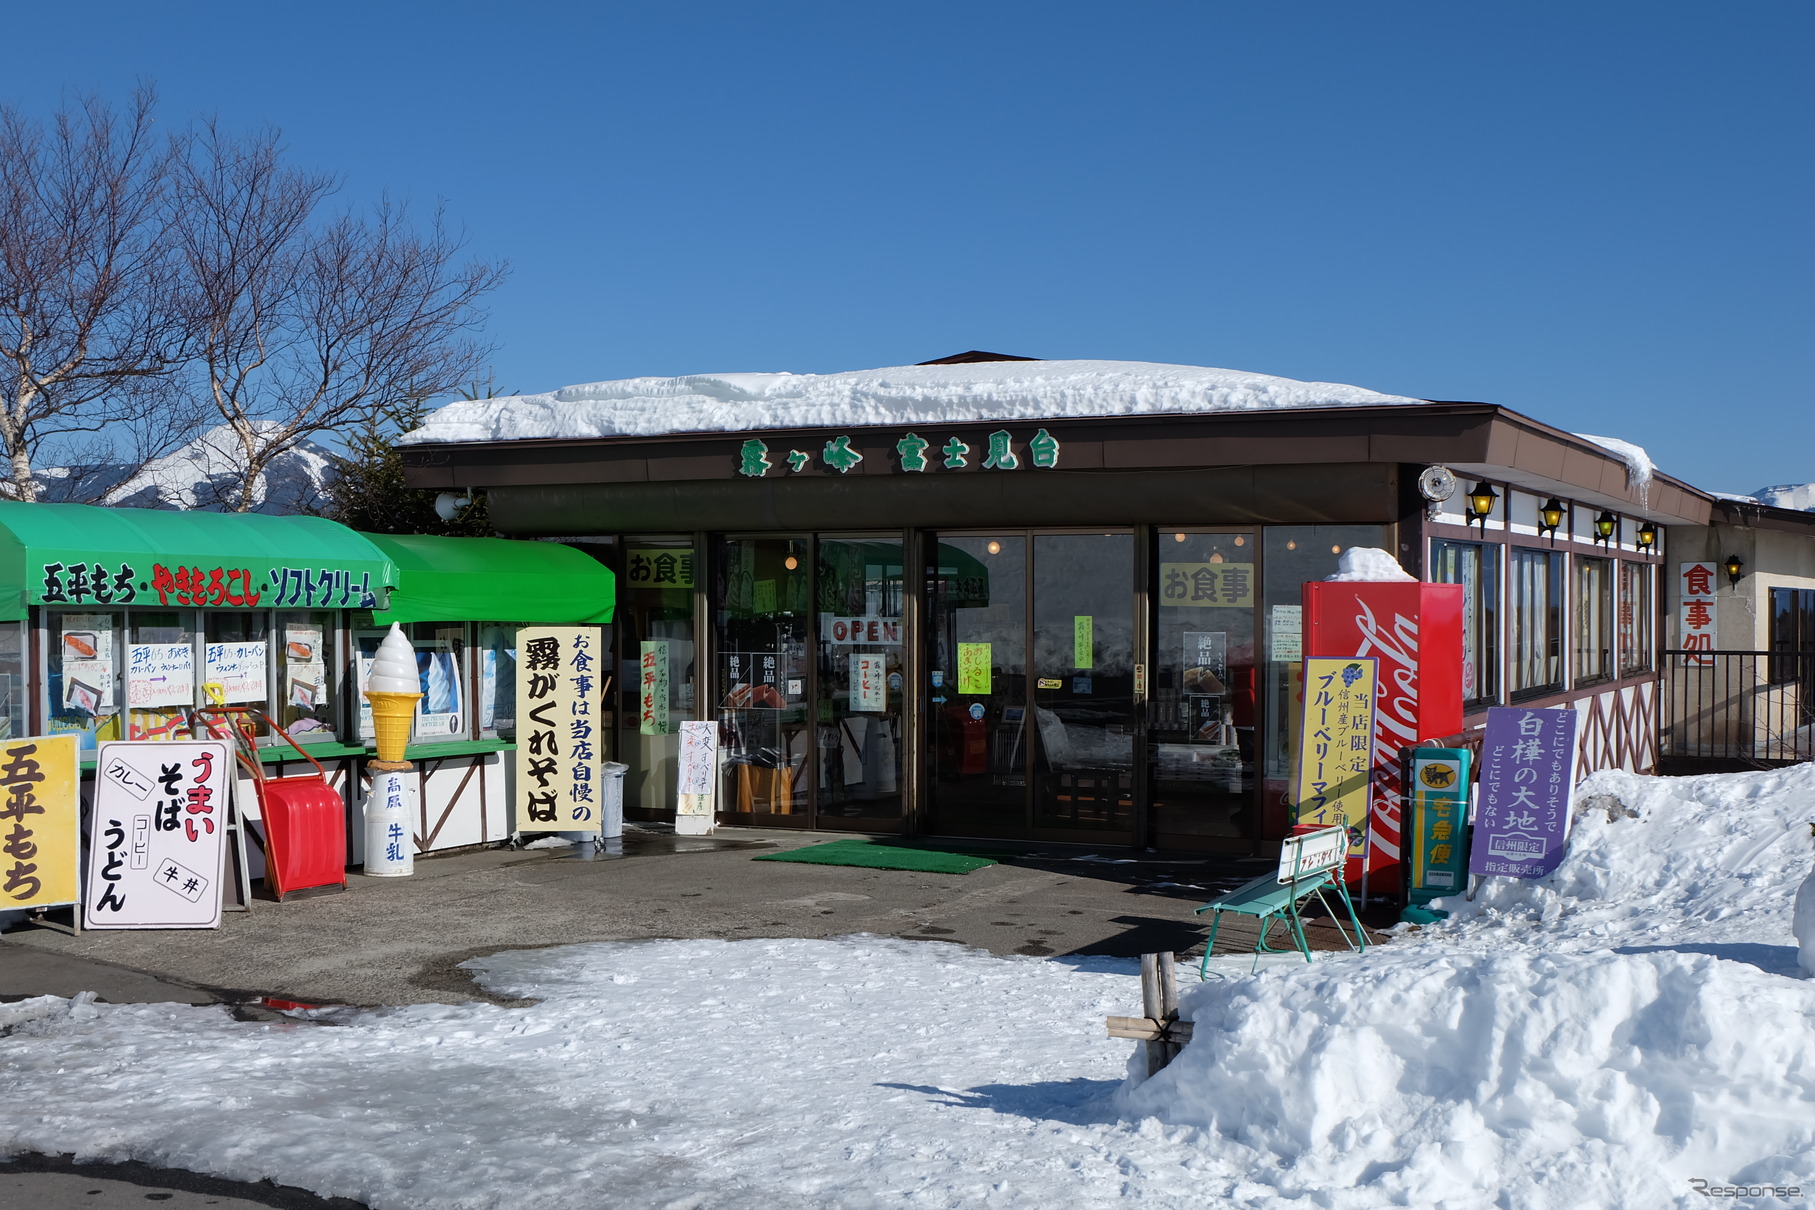 霧ヶ峰富士見台の茶屋は通年営業。